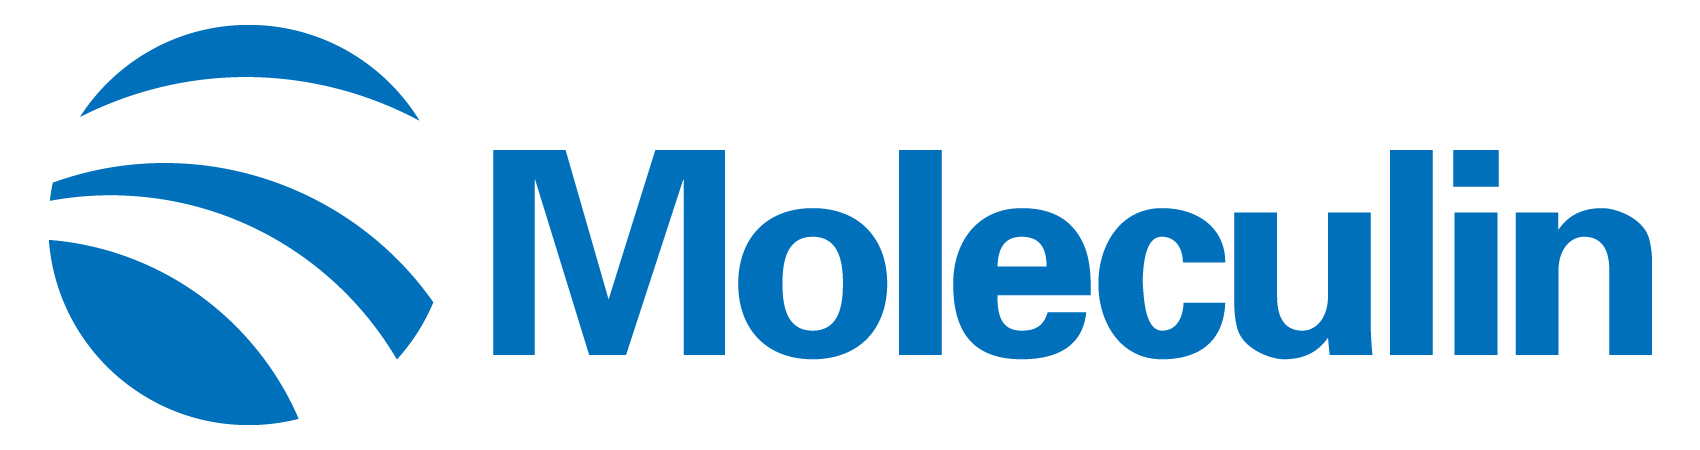 moleculin-logo_horiza26.jpg